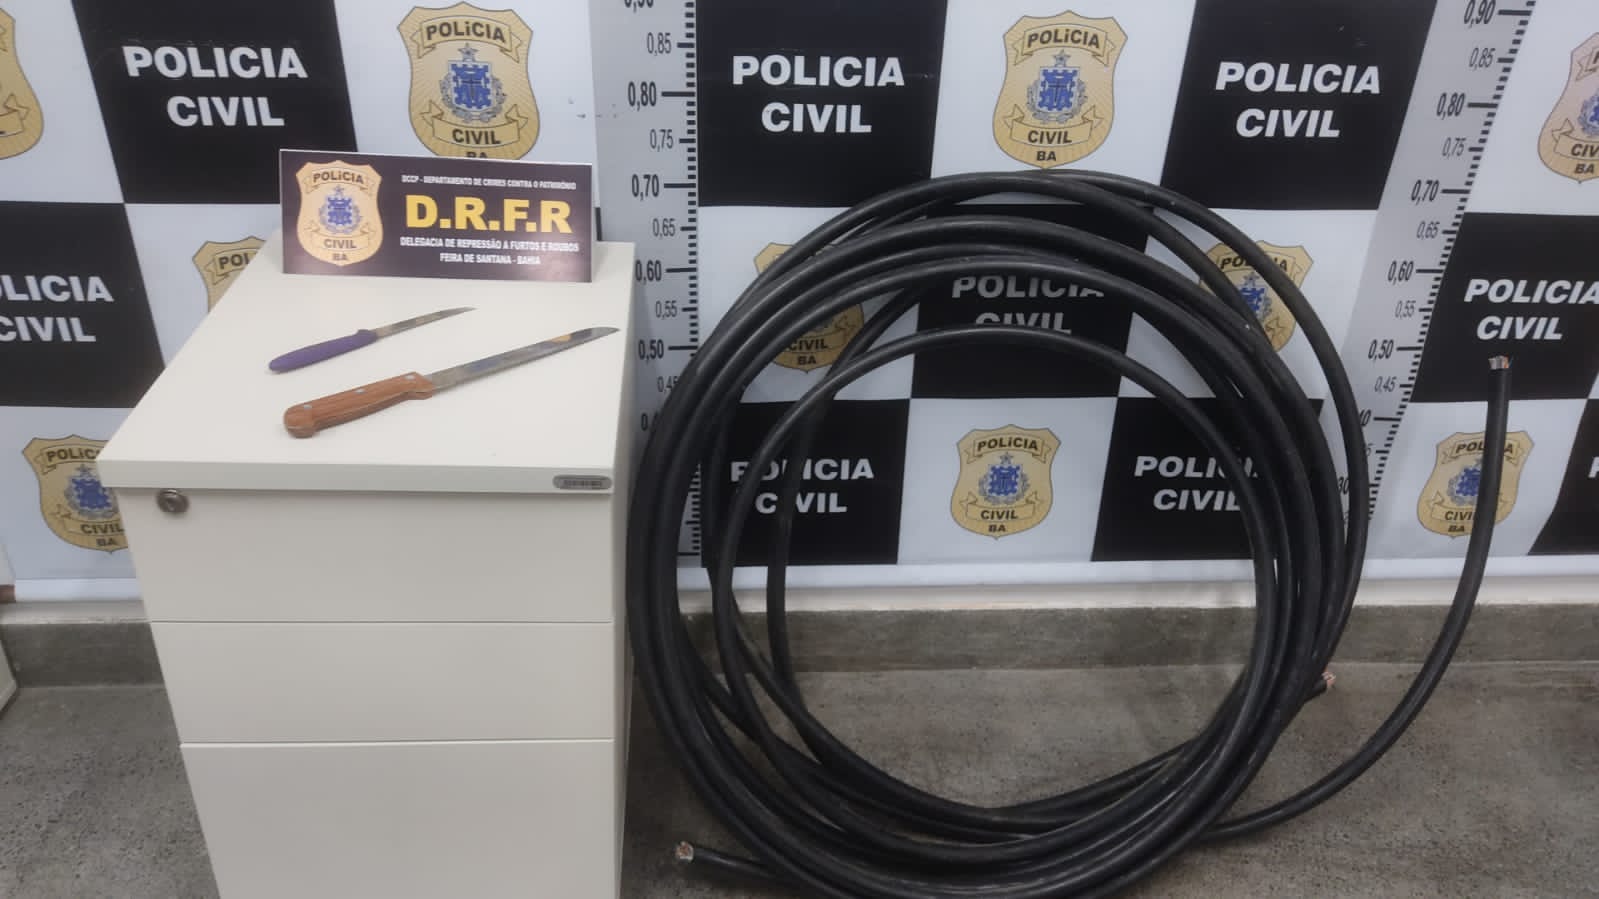 Suspeito de furtar cabos elétricos é preso em Feira de Santana